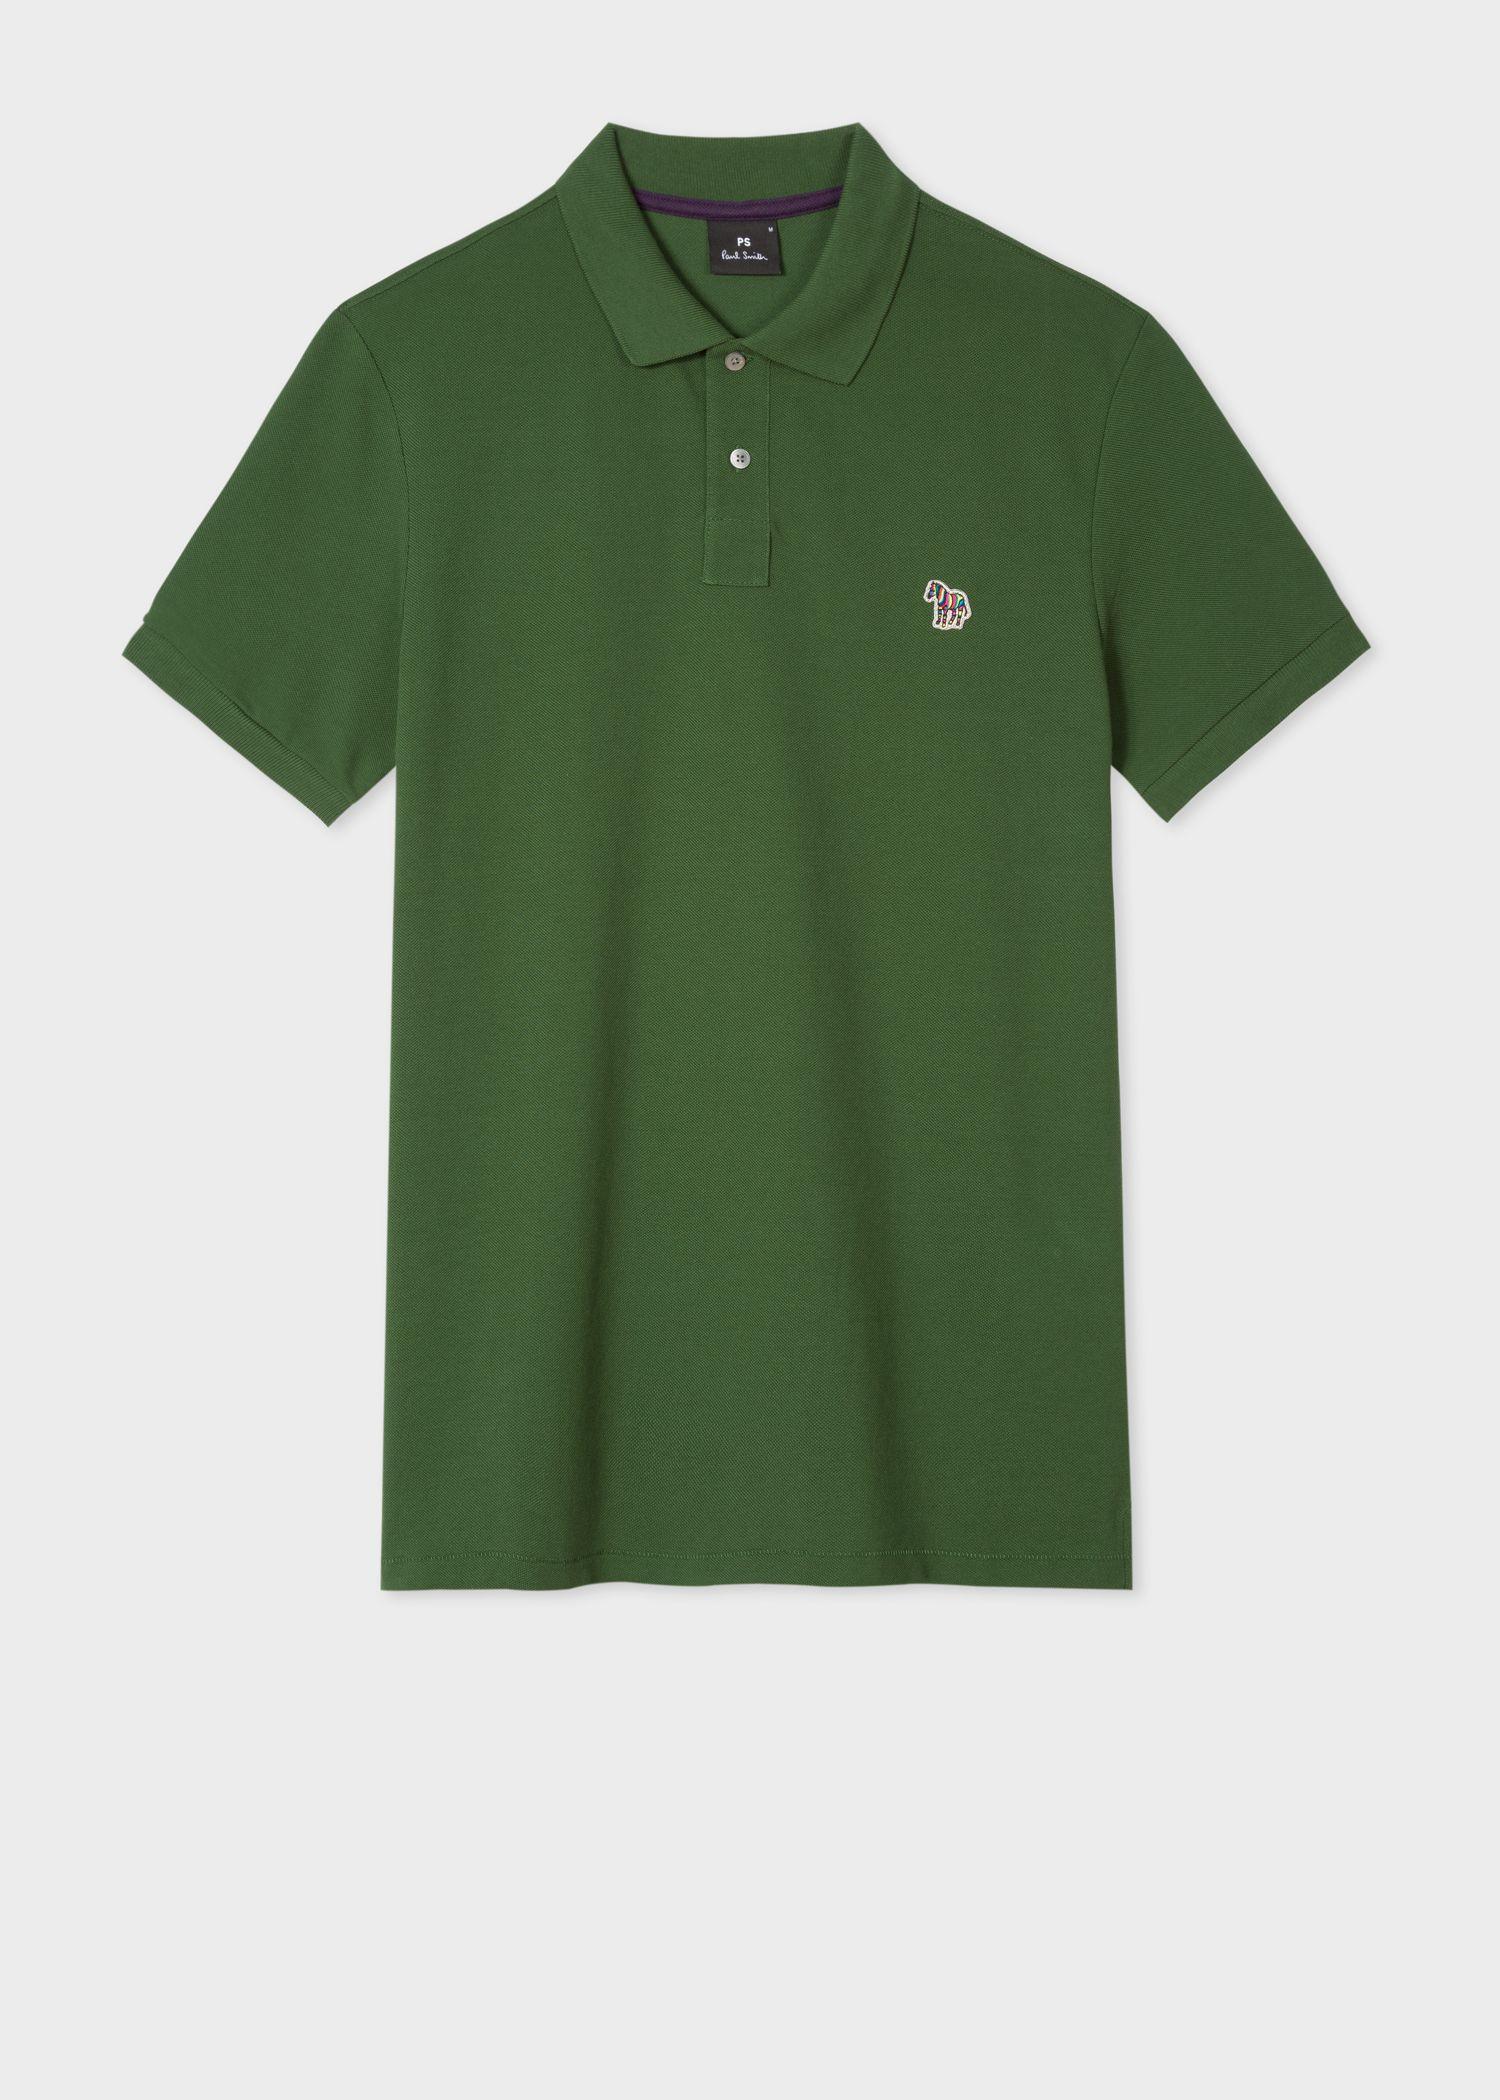 Green Polo Logo - Men's Forest Green Organic Cotton Piqué Zebra Logo Polo Shirt